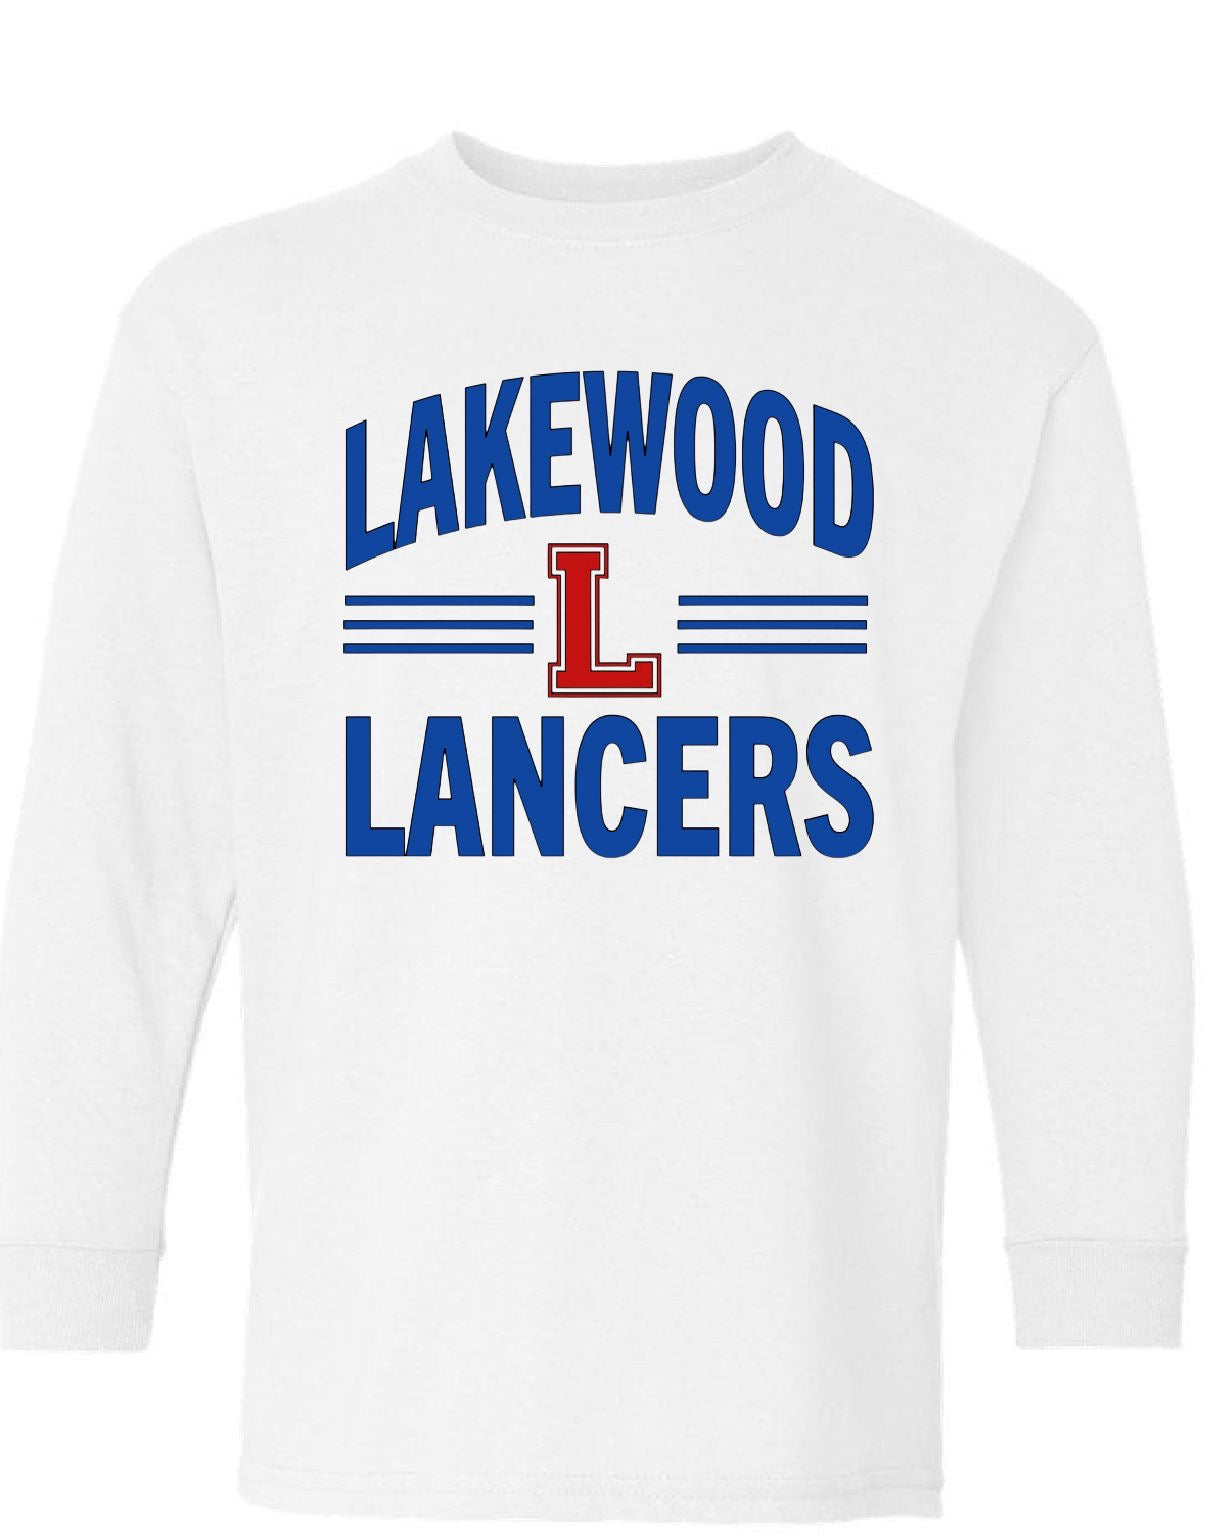 Lakewood Lancers Long-Sleeve Tee